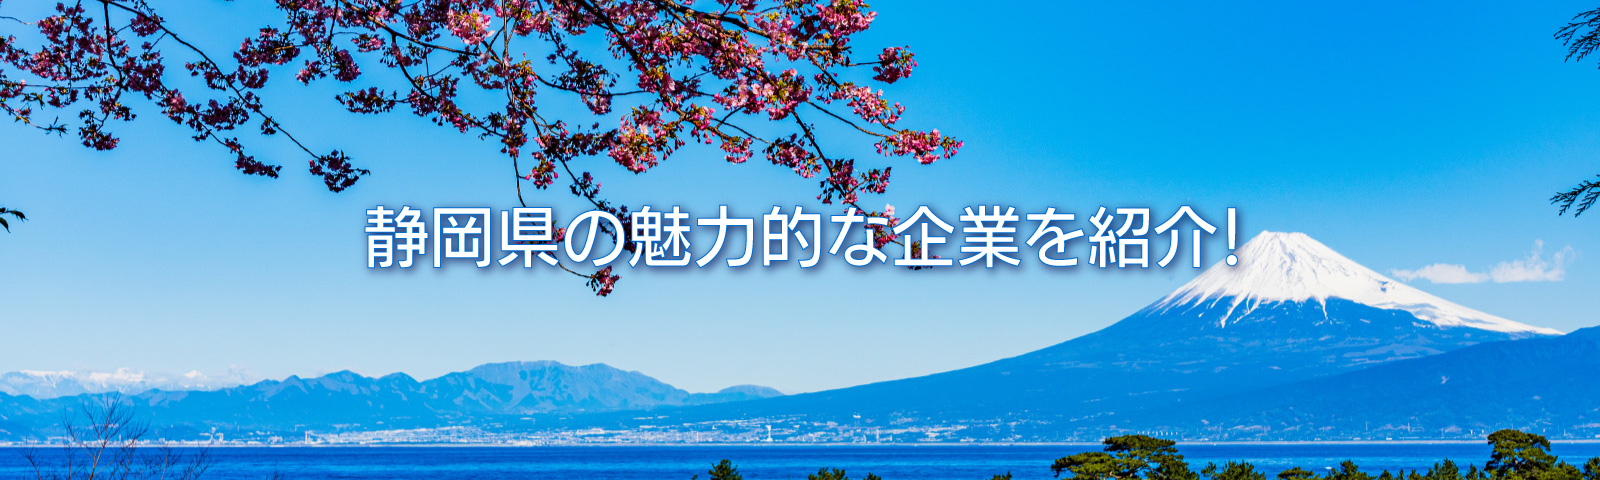 静岡県の魅力的な企業紹介